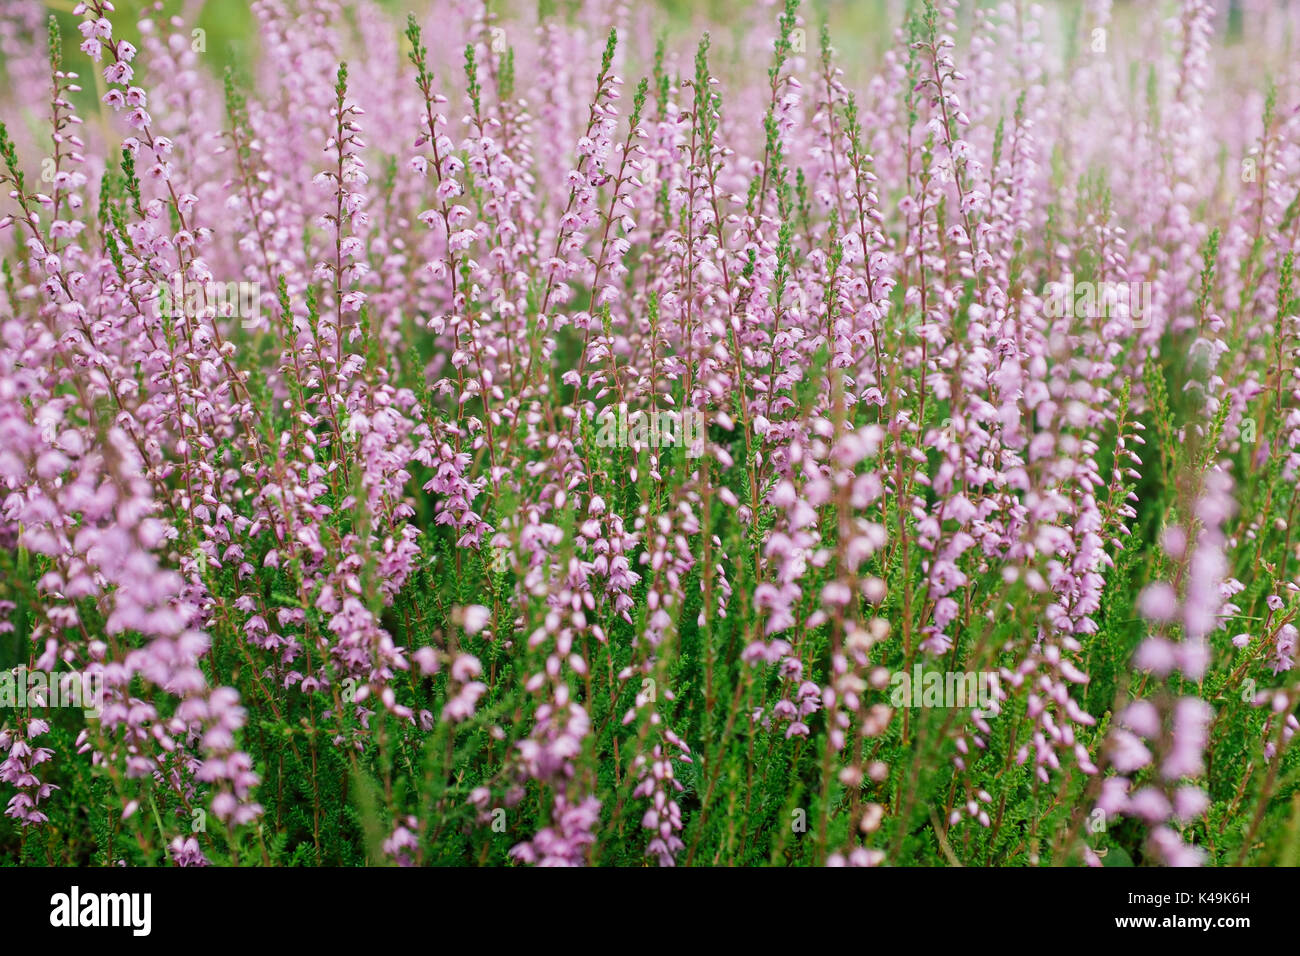 Common heather background Stock Photo